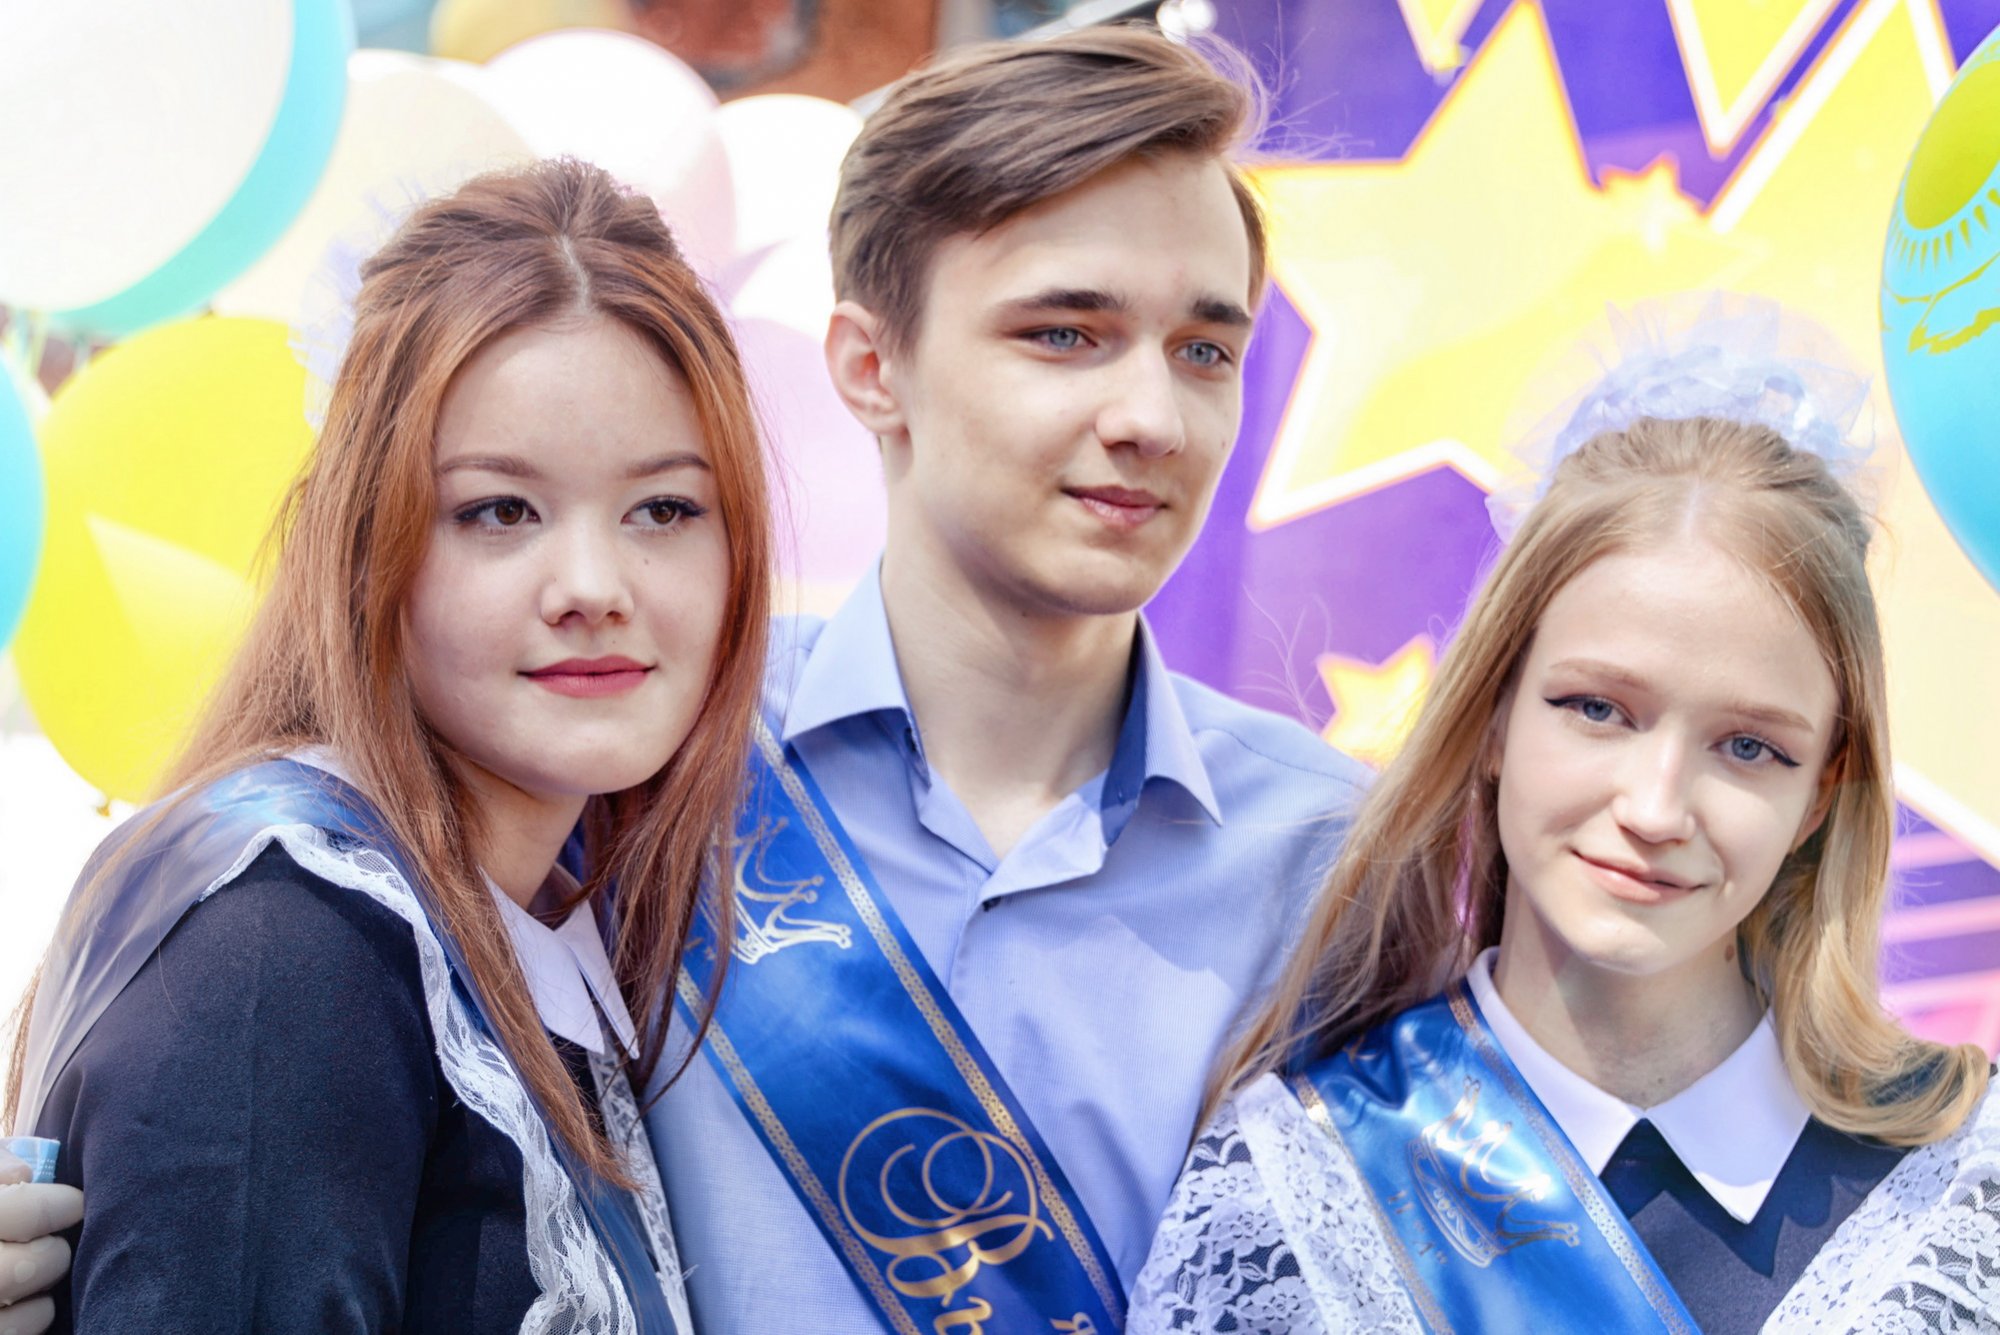 Последний звонок прозвучал для 46 тысяч учеников в Павлодаре